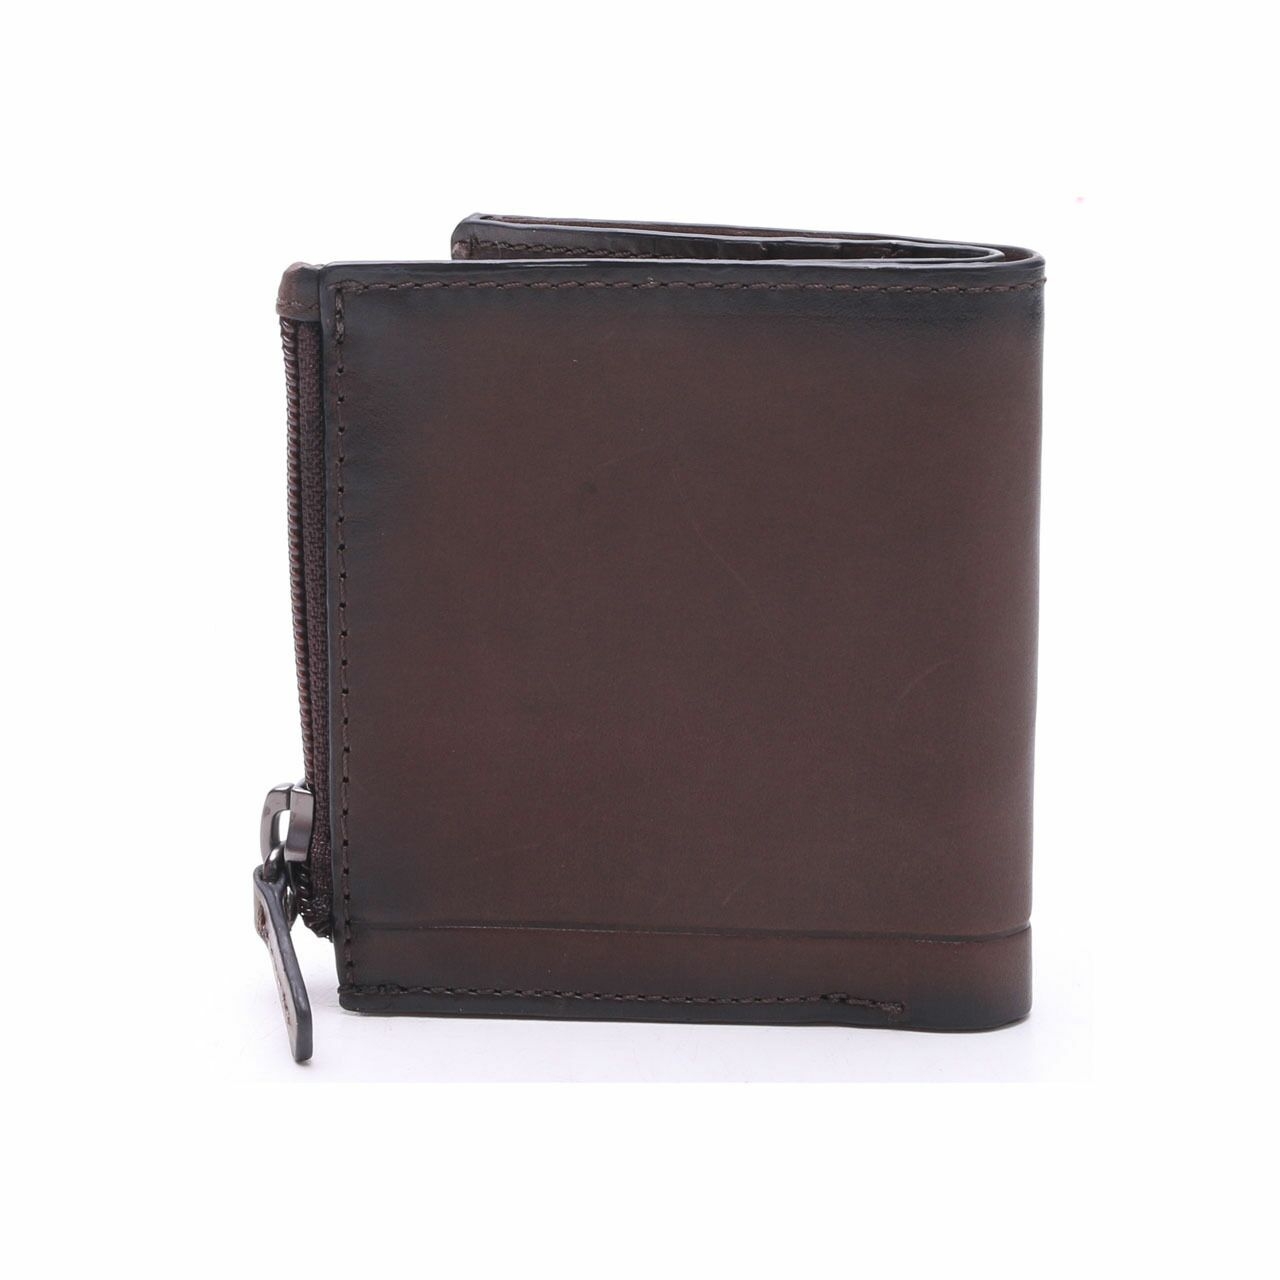 Fossil Allen Zip Bifold RFID Dark Brown Leather Wallet